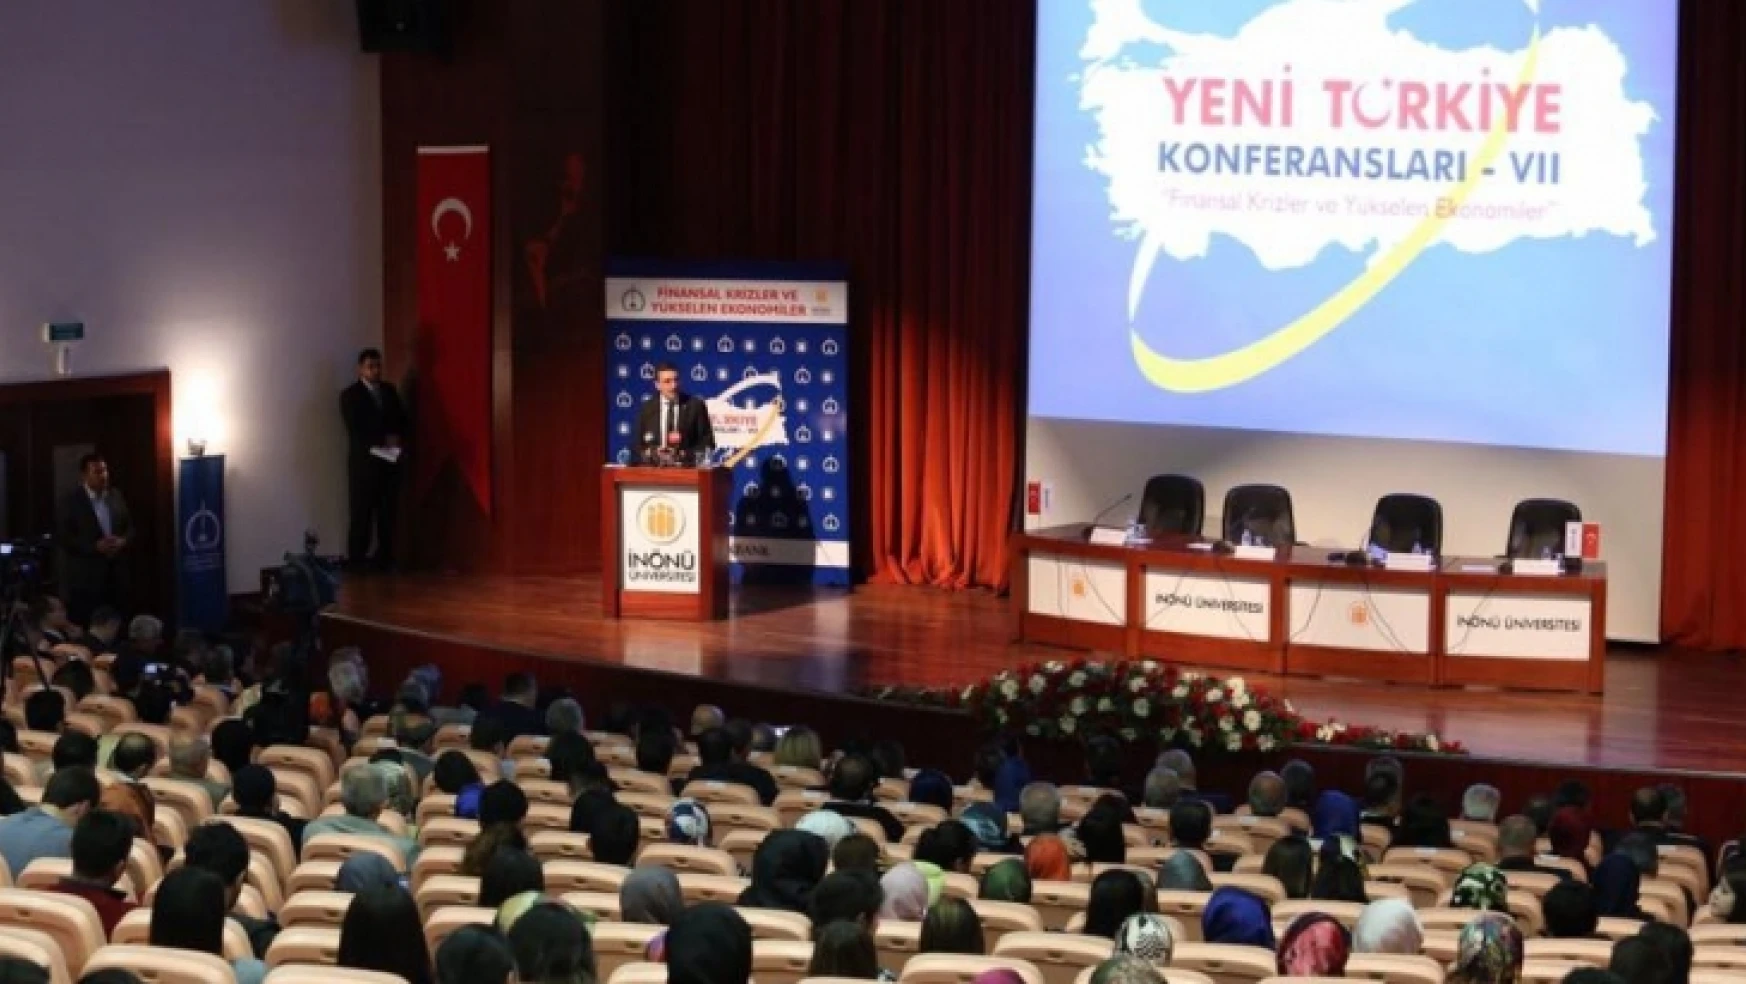 Yeni Türkiye Konferansları 7'de ekonomi konuşuldu